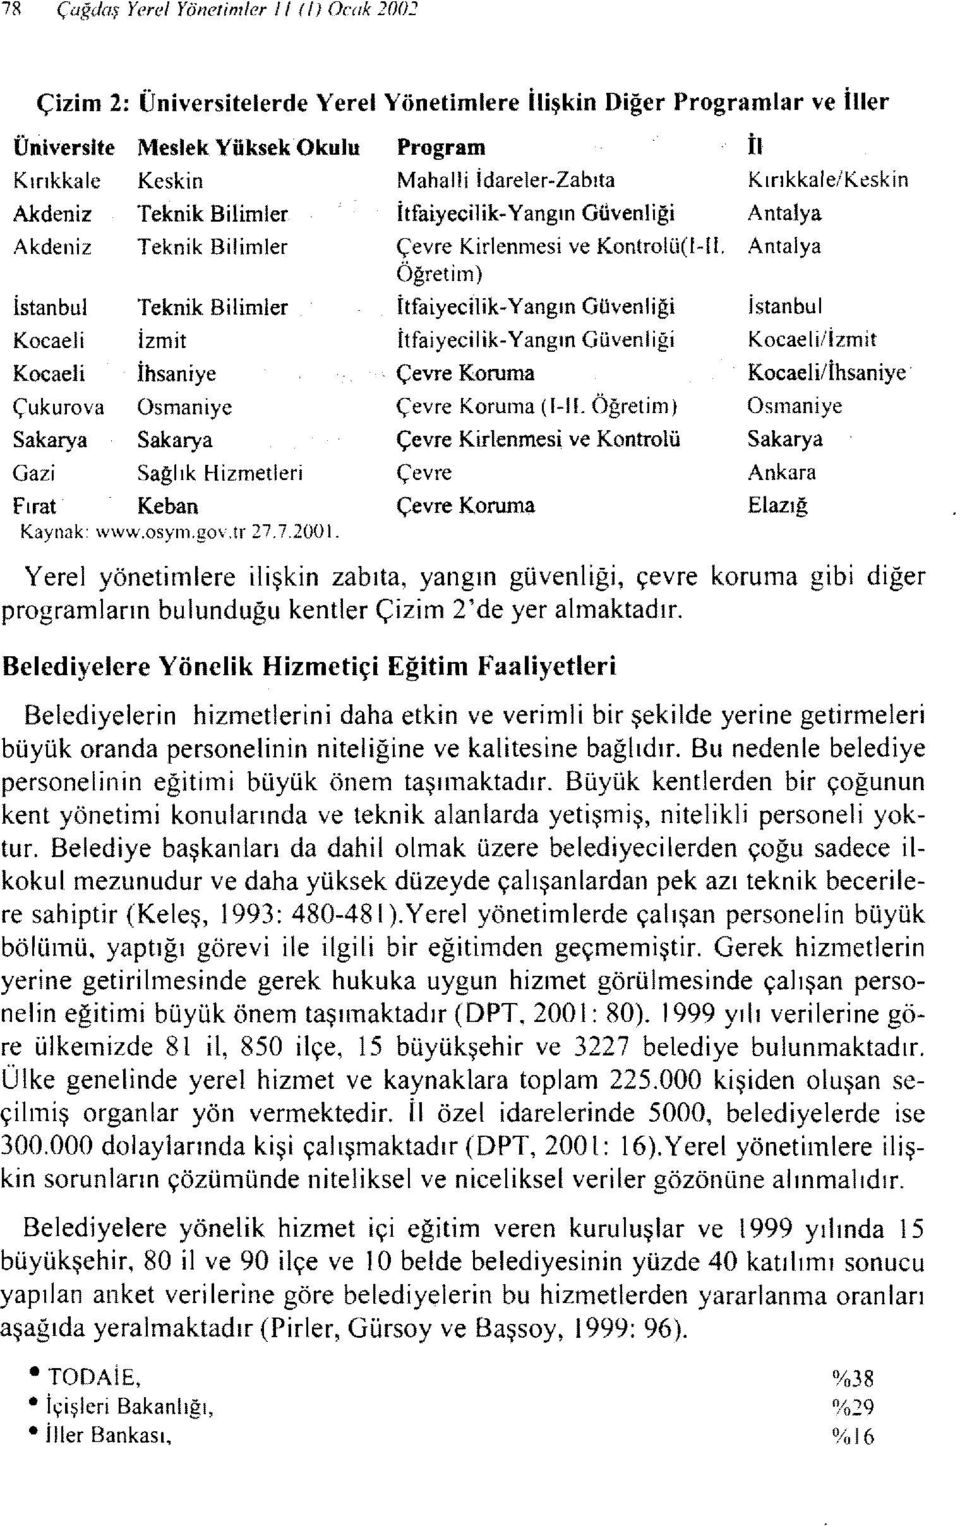 Bilimler İtfaiyecilik- Yangın Güvenliği Antalya Akdeniz Teknik Bilimler Çevre Kirlenmesi ve Kontrolü(l-Il.